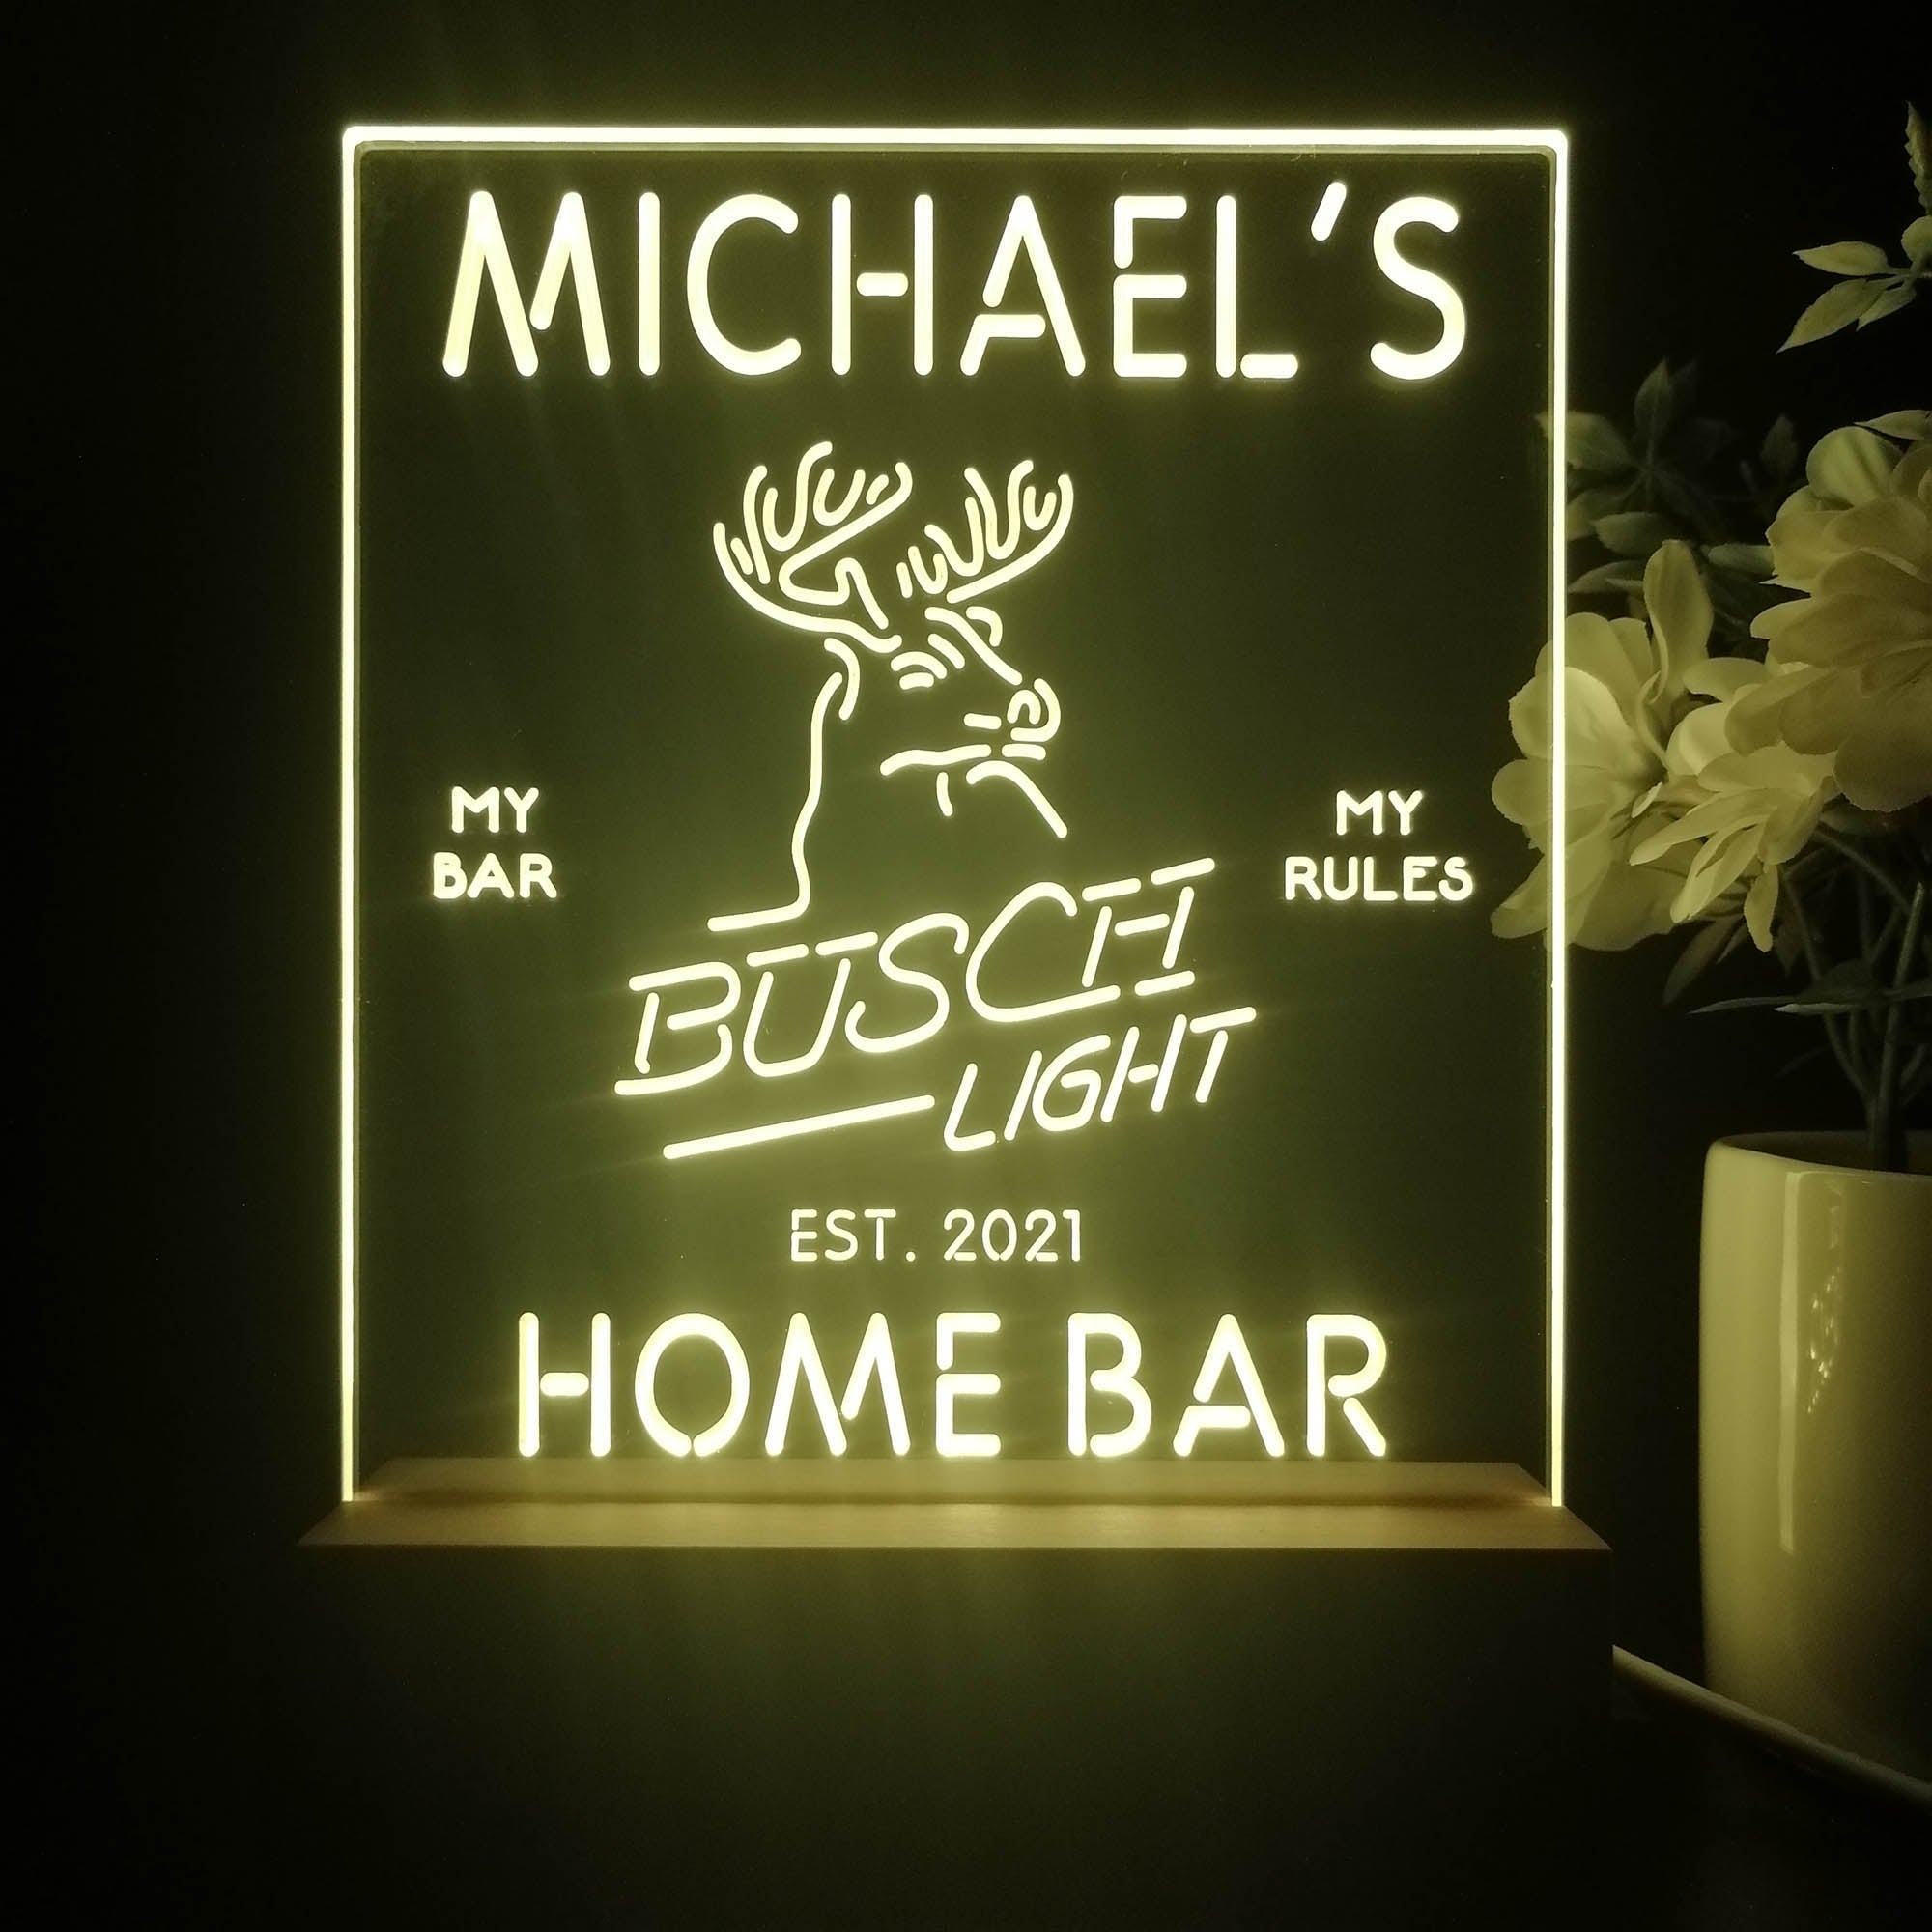 Personalized Busch Light Beer Deer Bar Souvenir Neon LED Night Light Sign